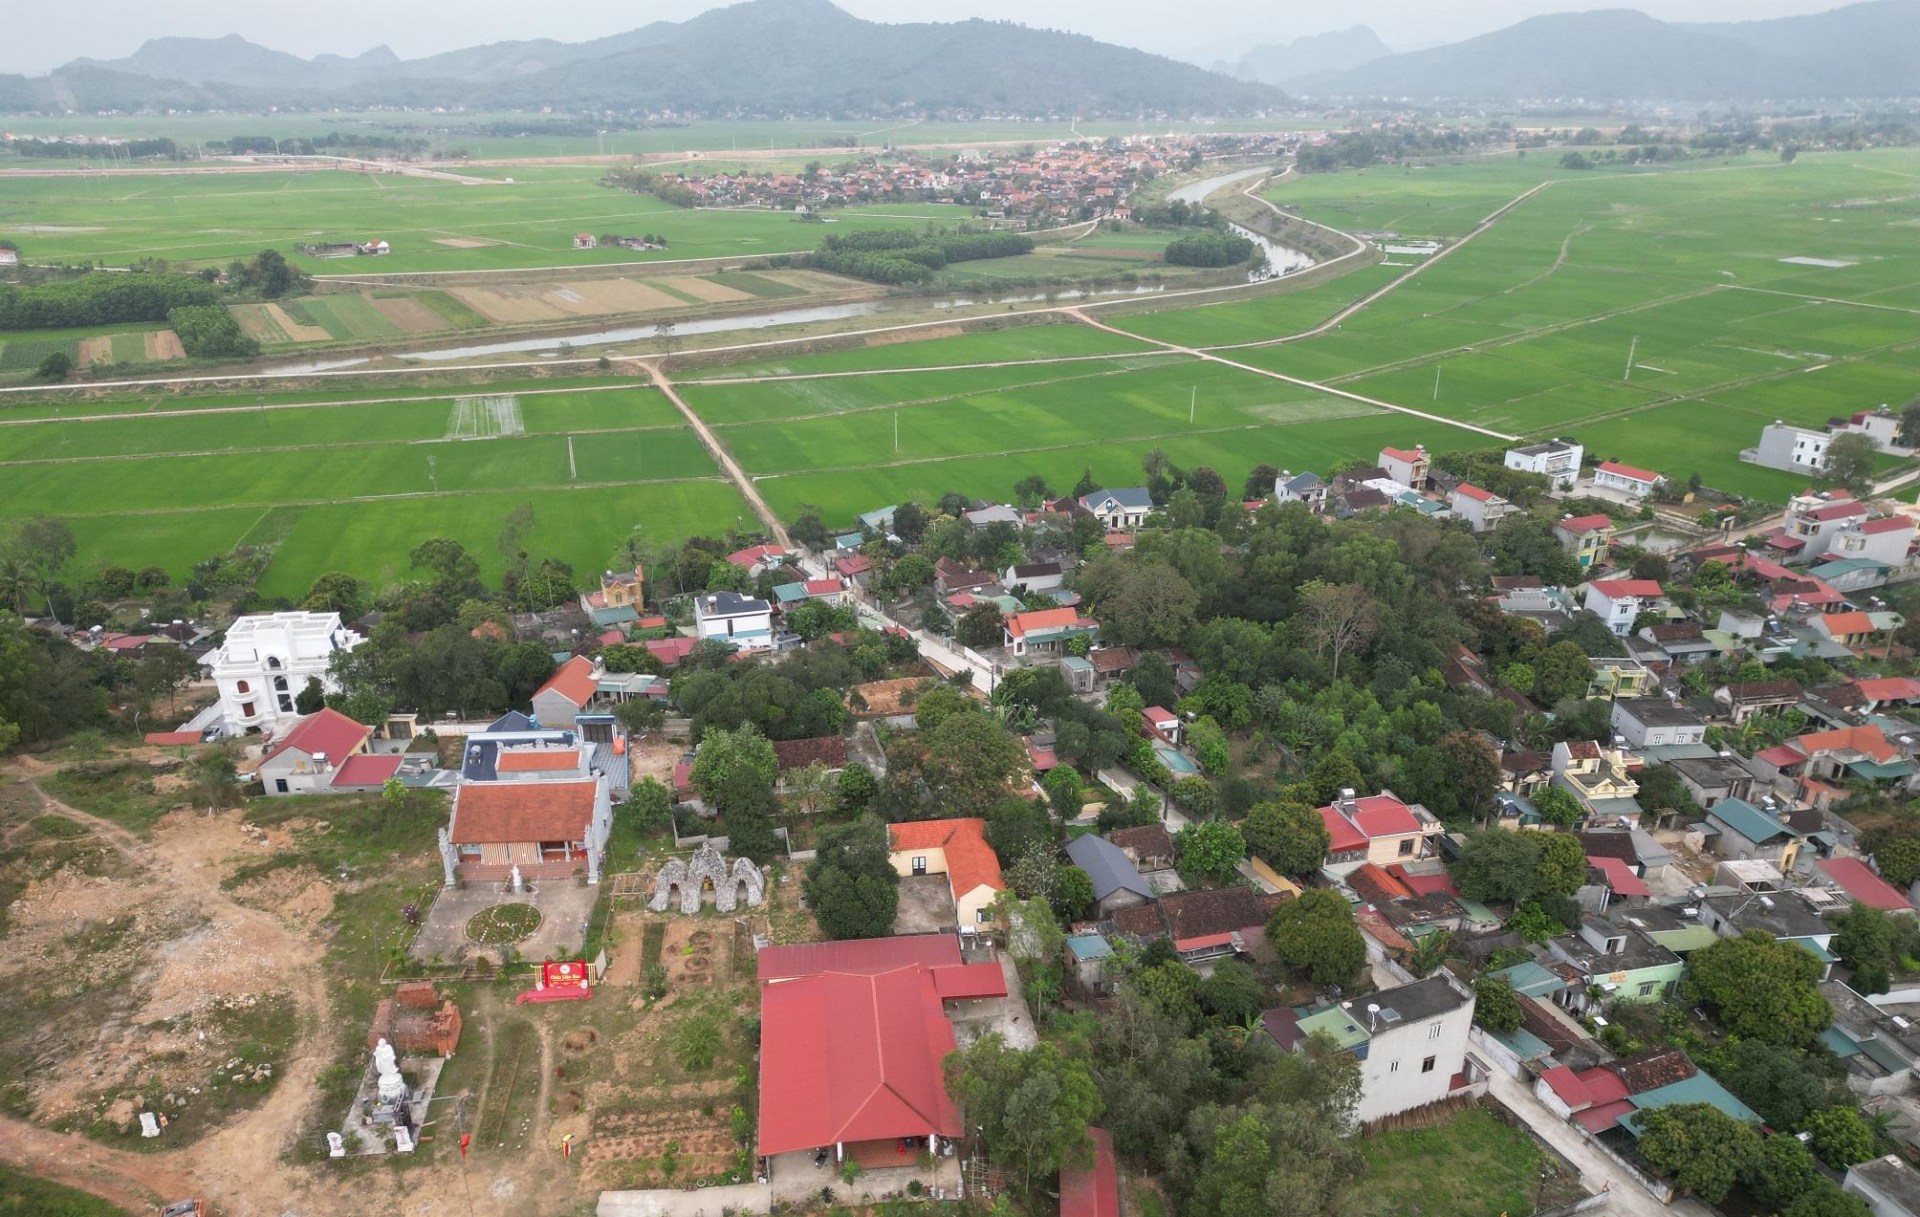 Thanh Hóa xin ý kiến hoàn thiện quy hoạch khu công nghiệp hơn 300 ha